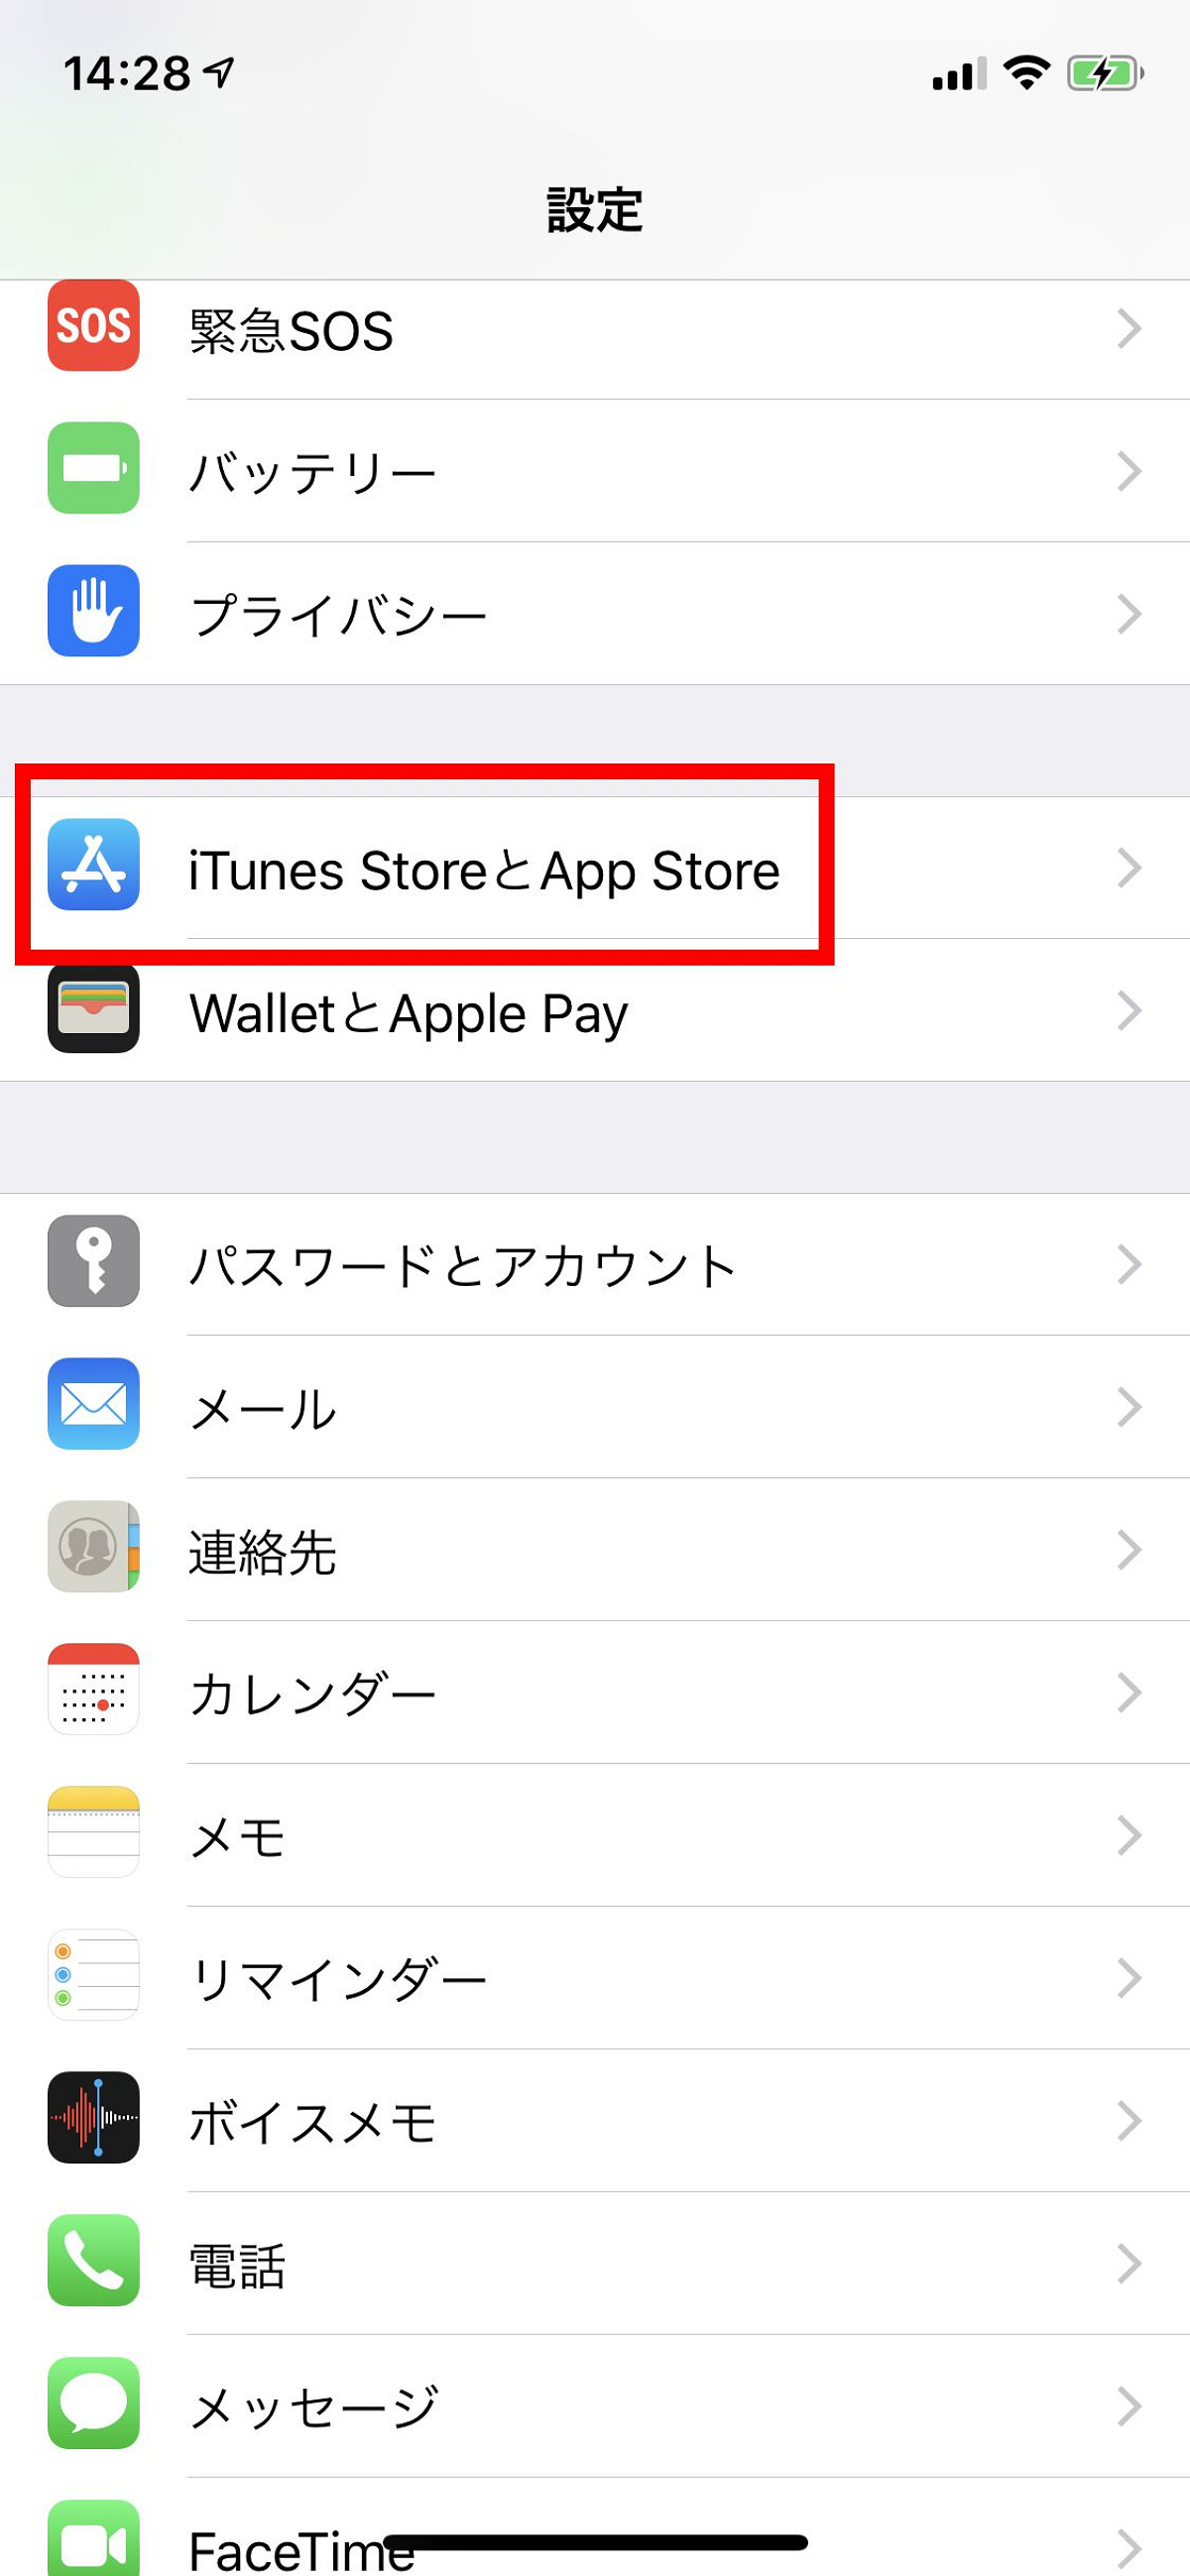 「設定」を開き、「iTunes StoreとApp Store」をタップ